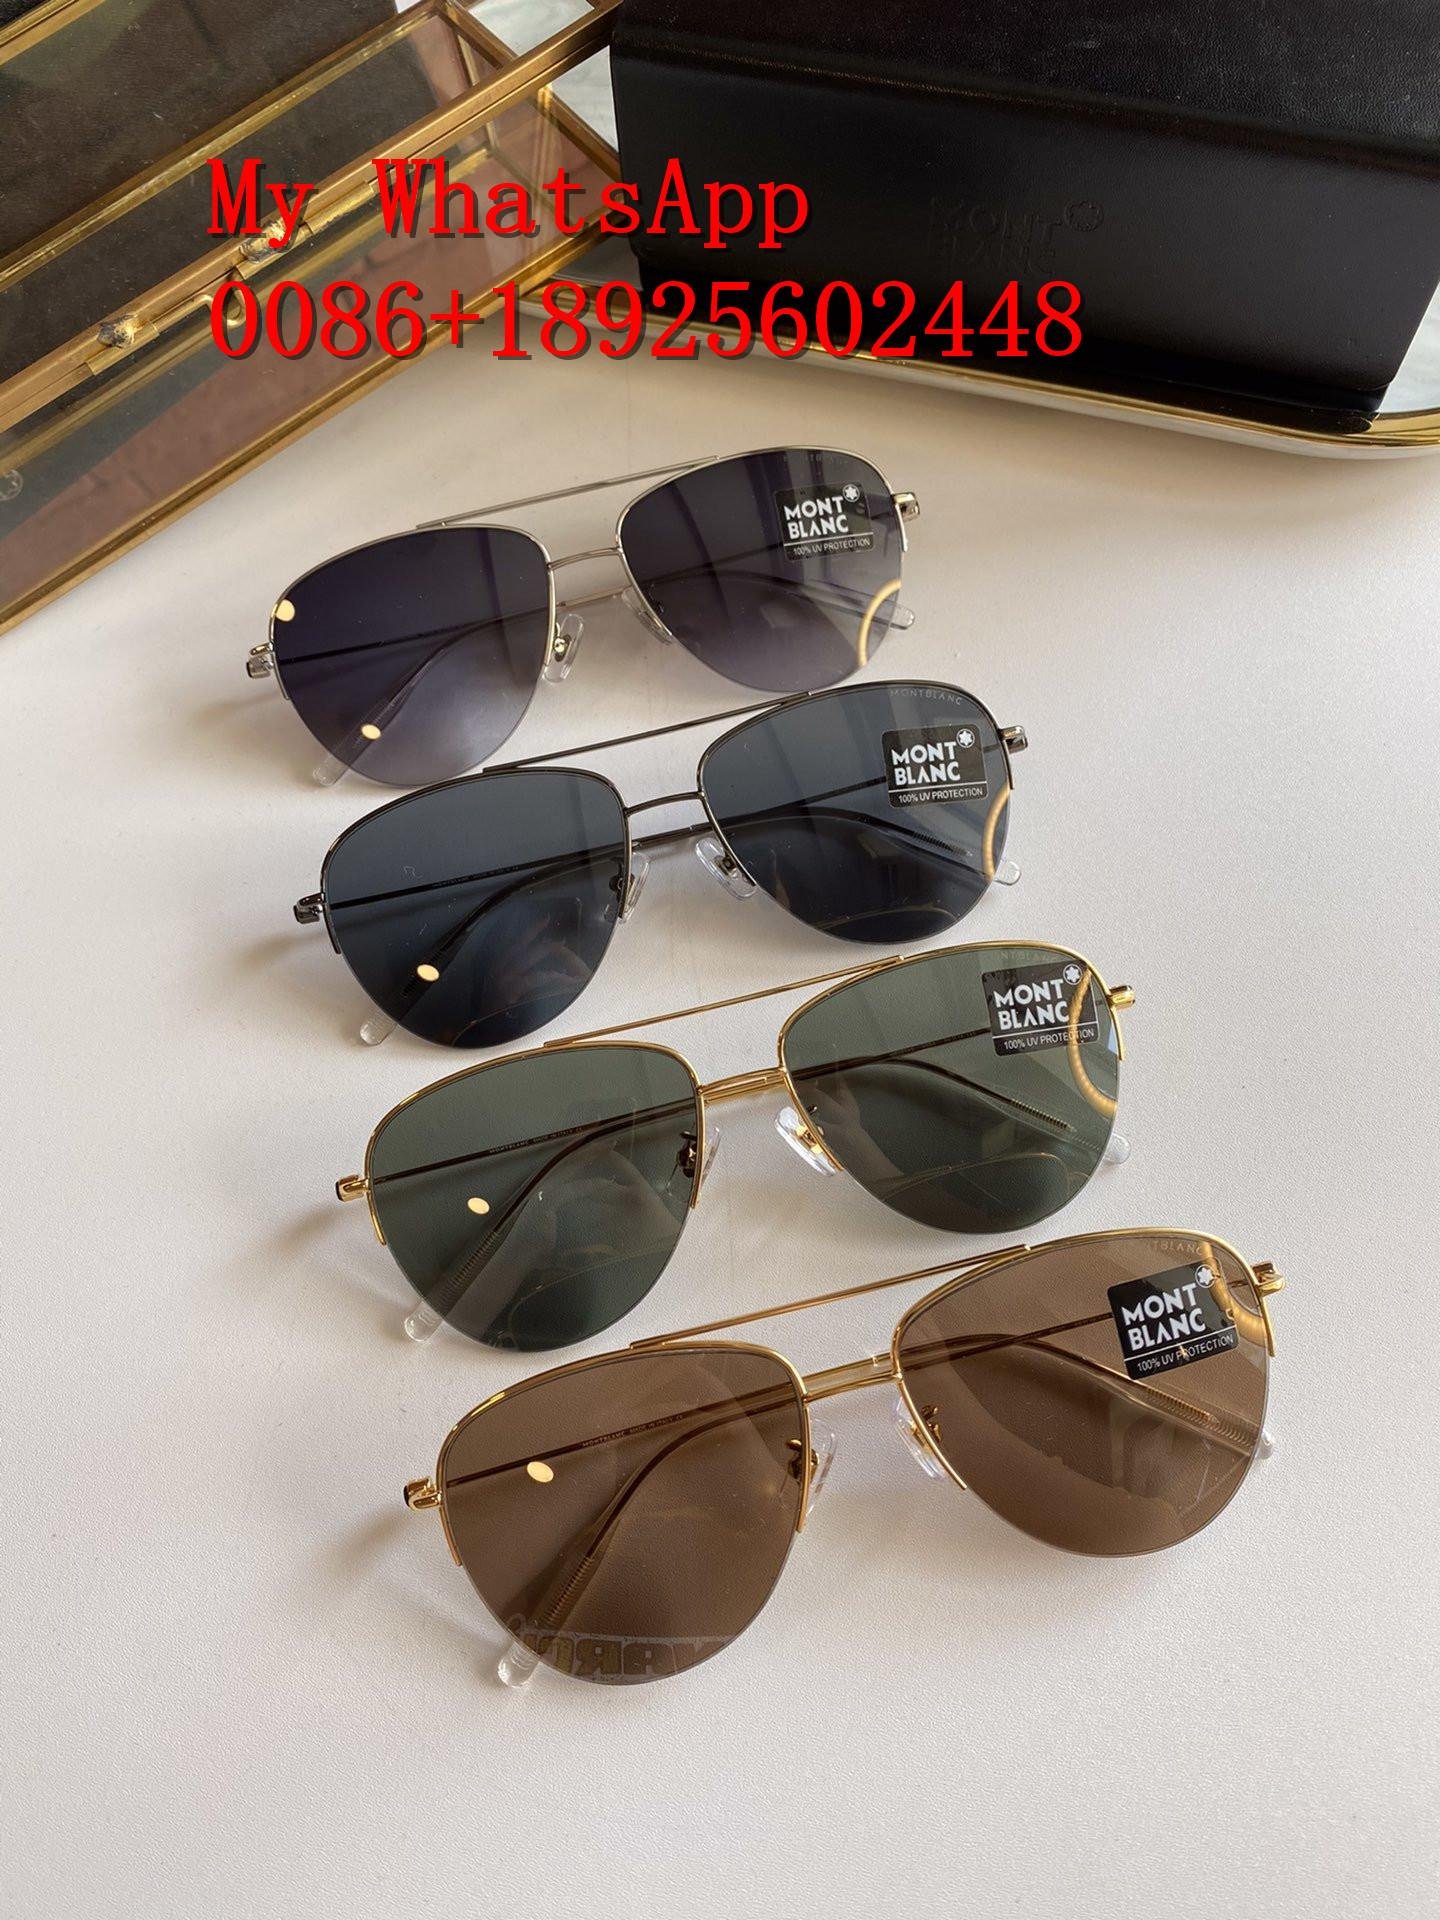 Wholesale MONT BLANC sunglasses MONT BLANC glasses1:1 quality sunglasses  2